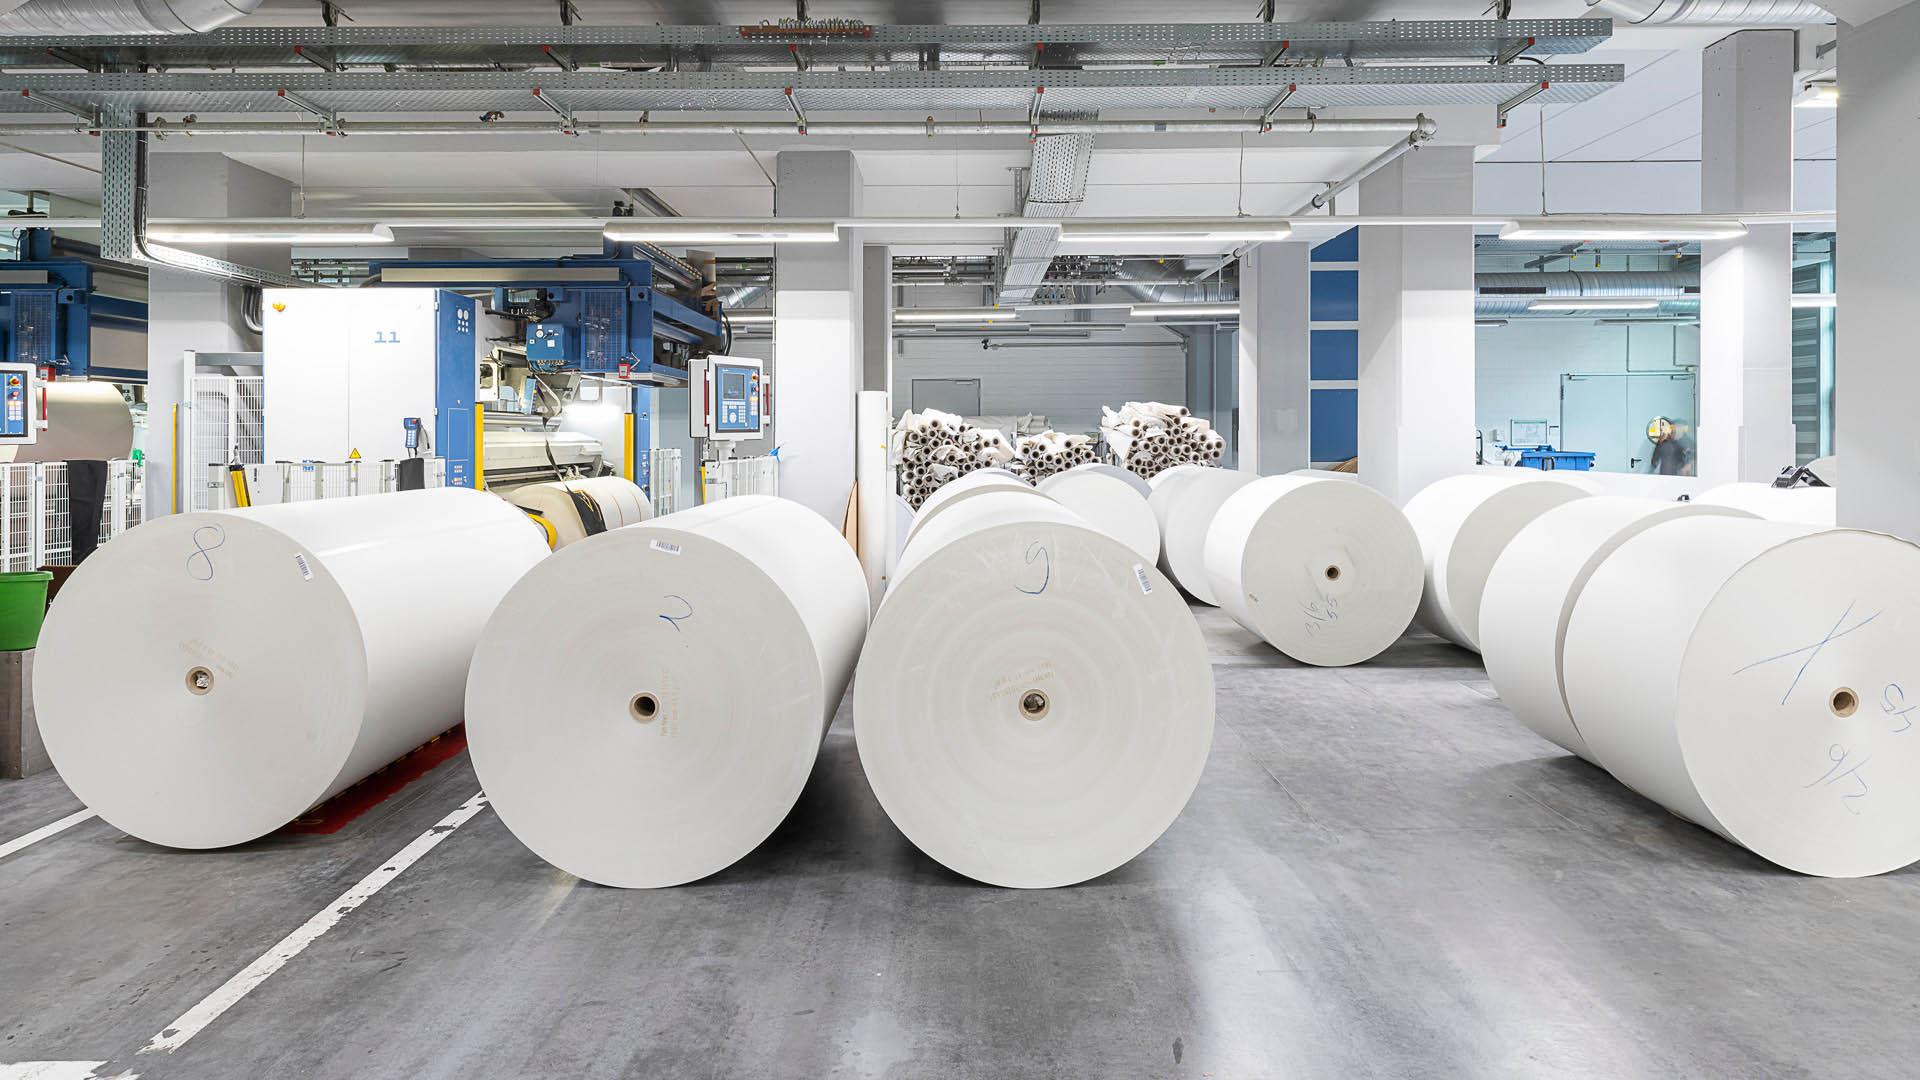 Raum mit großen weißen Papierrollen – die Papierzuführung für den Druck der Medien von Oberpfalz Medien.